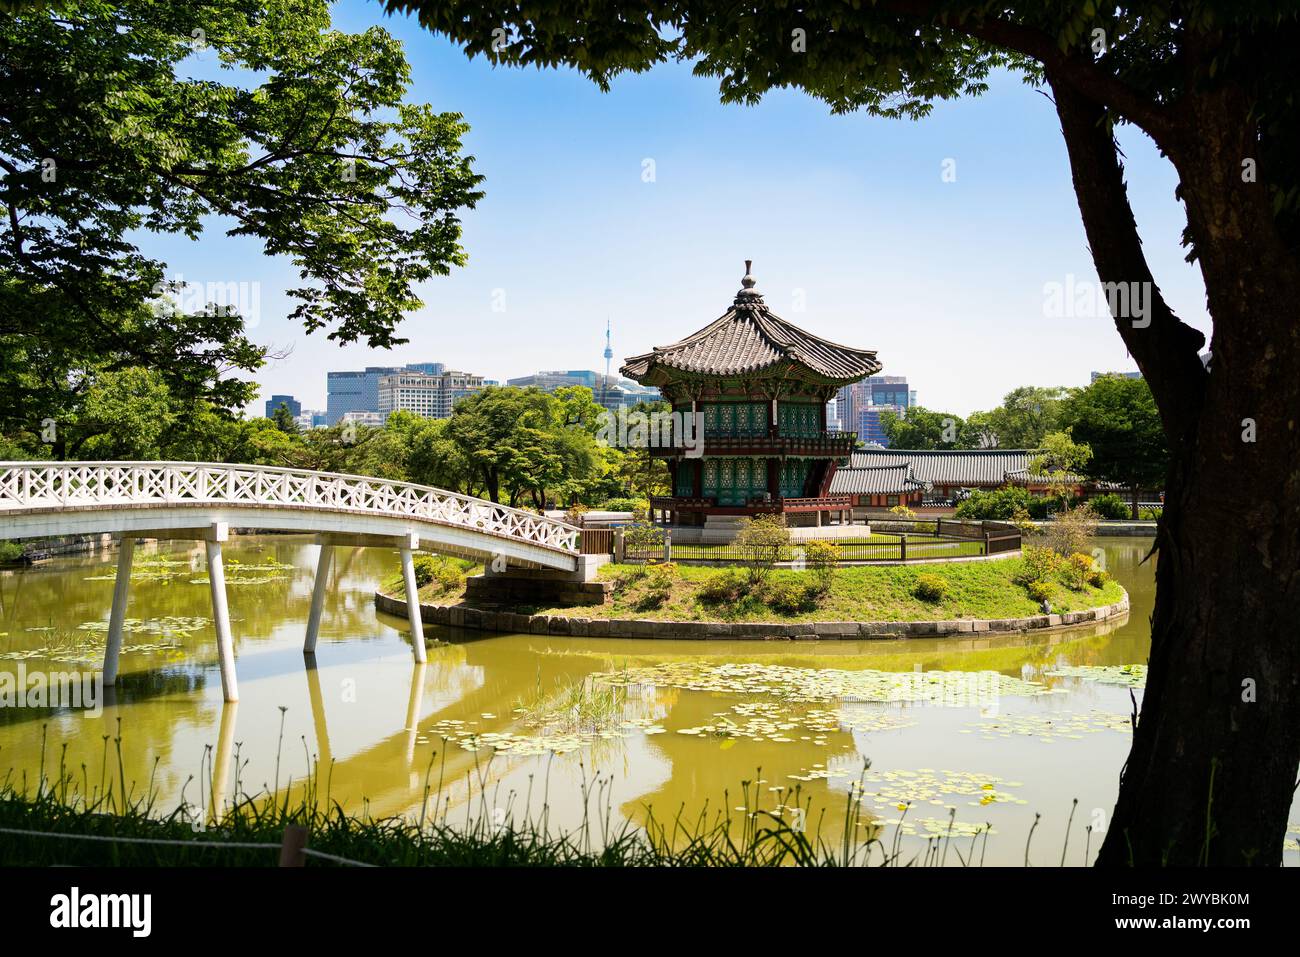 Südkorea, Seoul. Gyeongbokgung Palastbereich Garten und Park. Hyangwonjeong Pavillon und Brücke. Skyline der Stadt im Hintergrund. Sommerreisen. Stockfoto